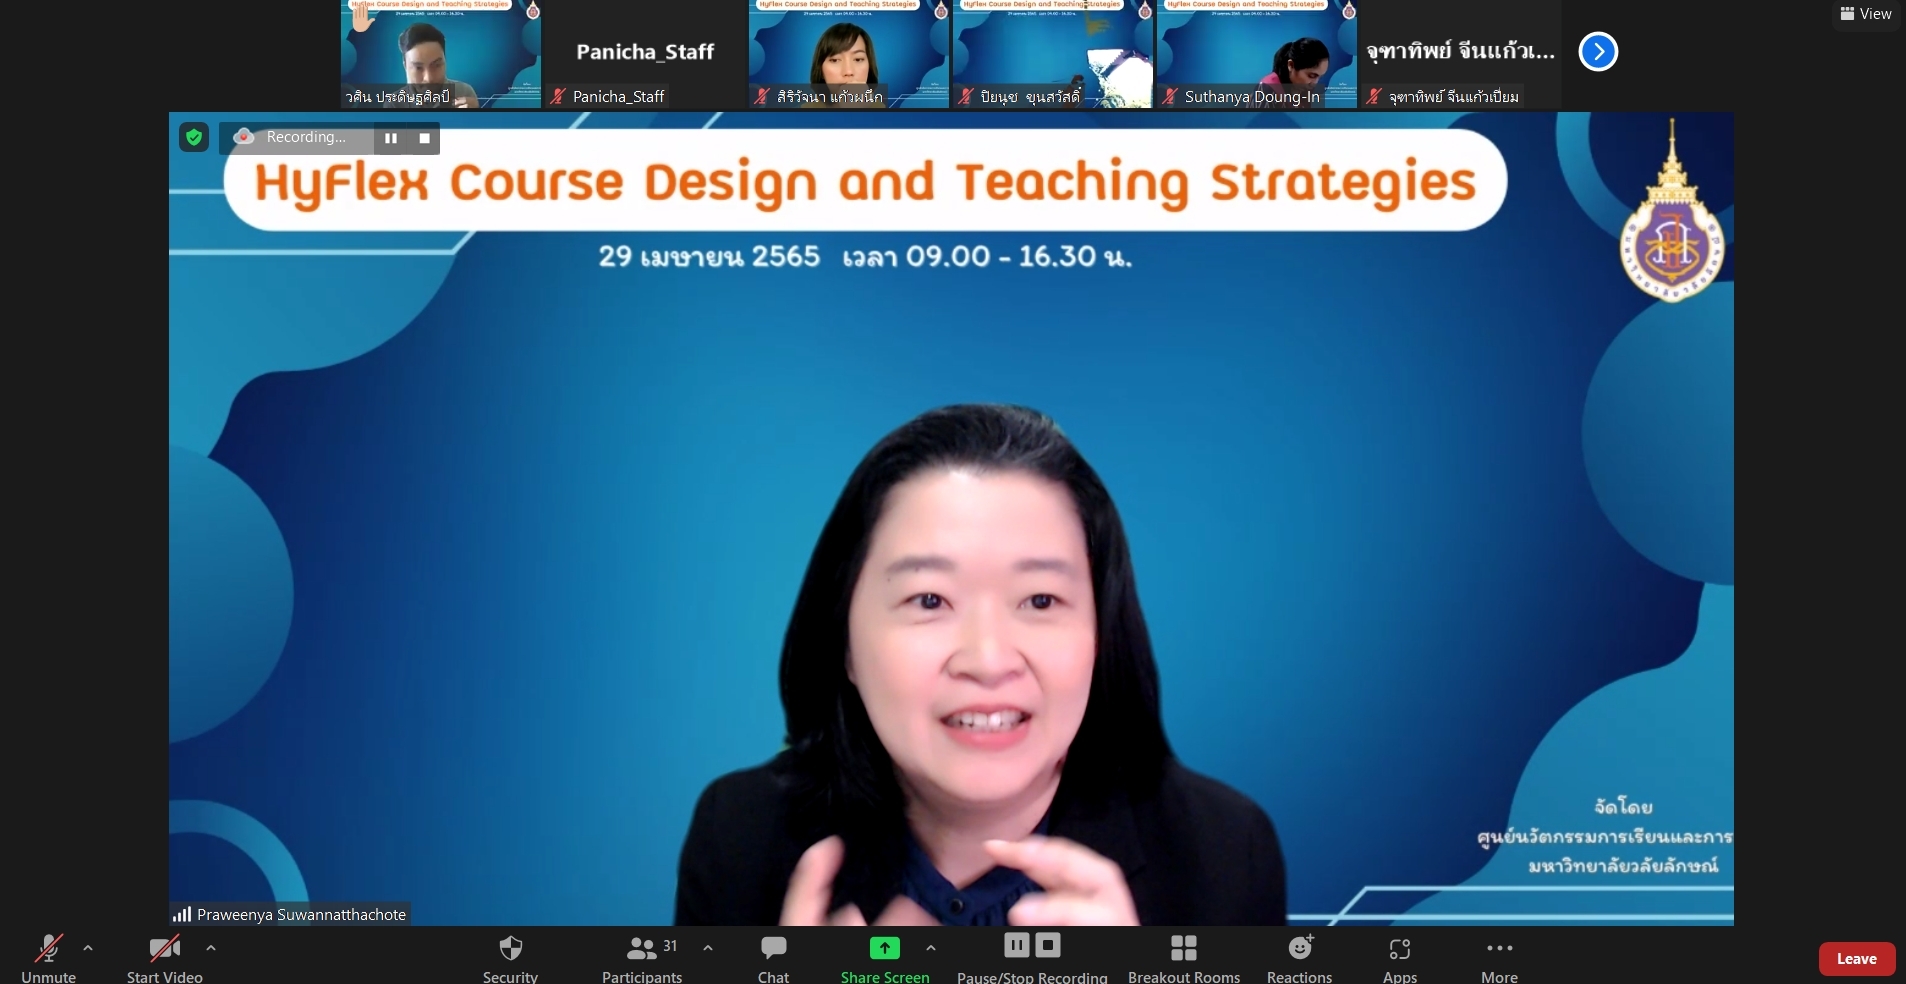 ศนร. จัดอบรมหัวข้อ HyFlex Course Design and Teaching Strategies วันที่ 29 เม.ย. 2565